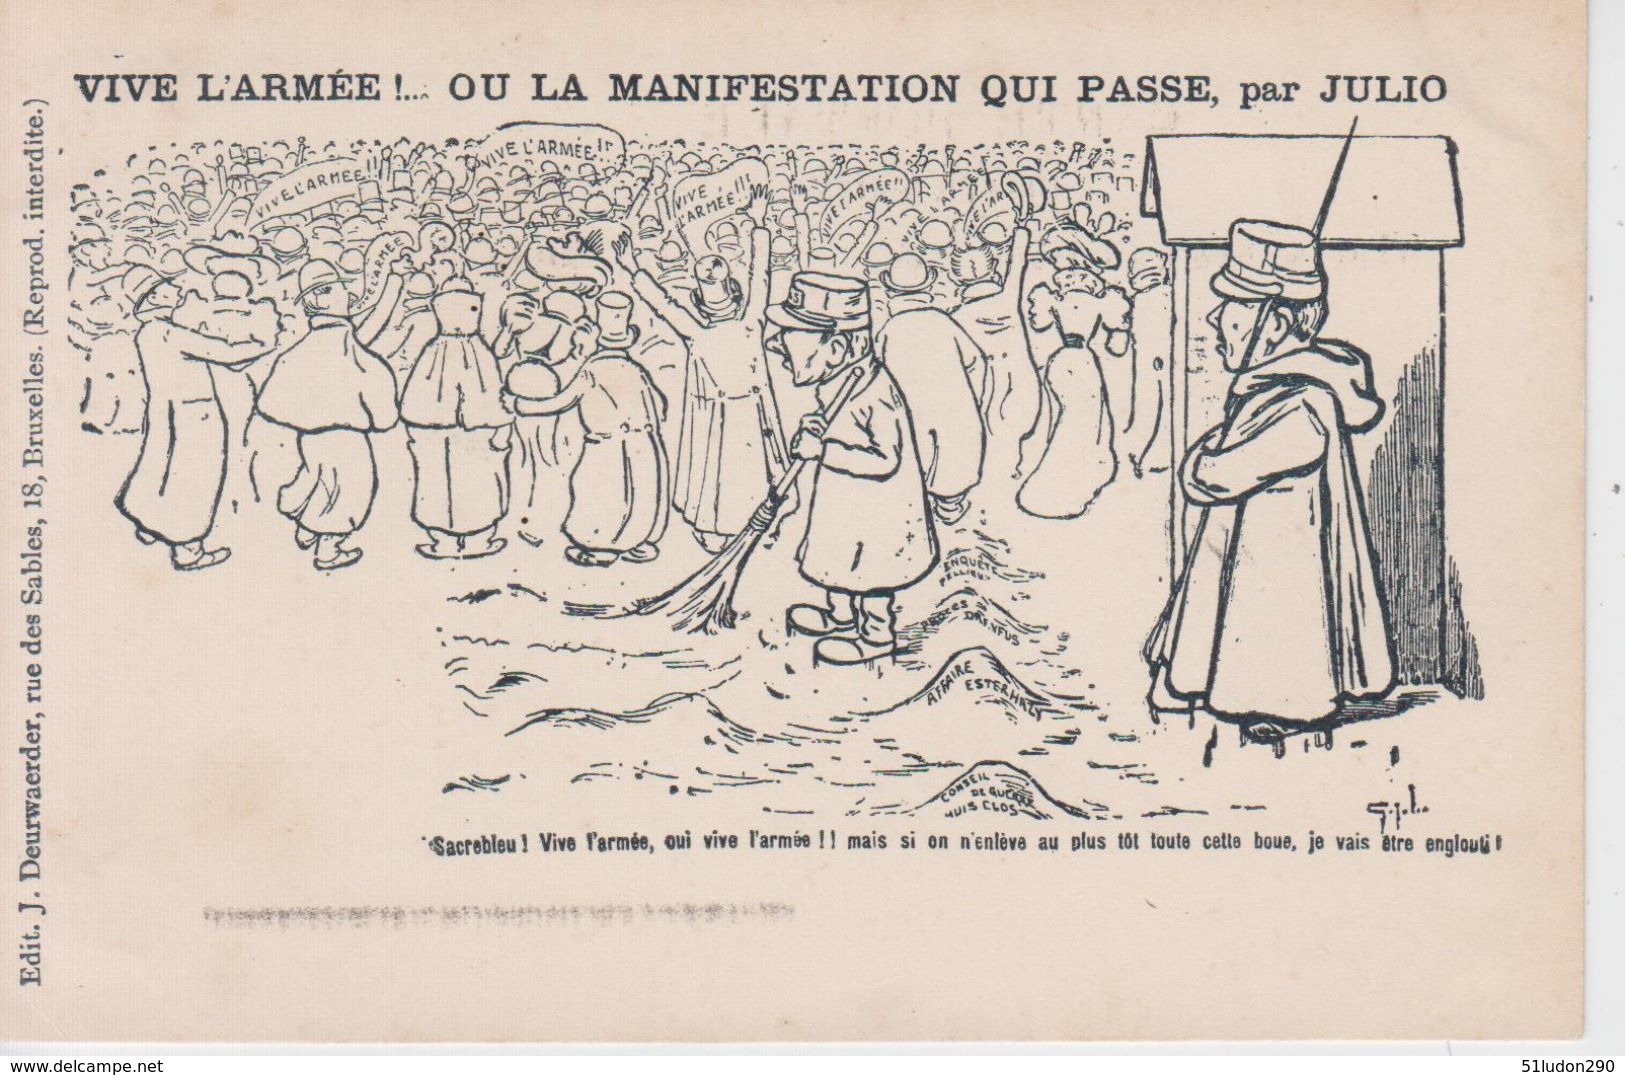 CPA Précurseur Affaire Dreyfus - Vive L'armée! ... Ou La Manifestation Qui Passe, Par Julio - Satiriques